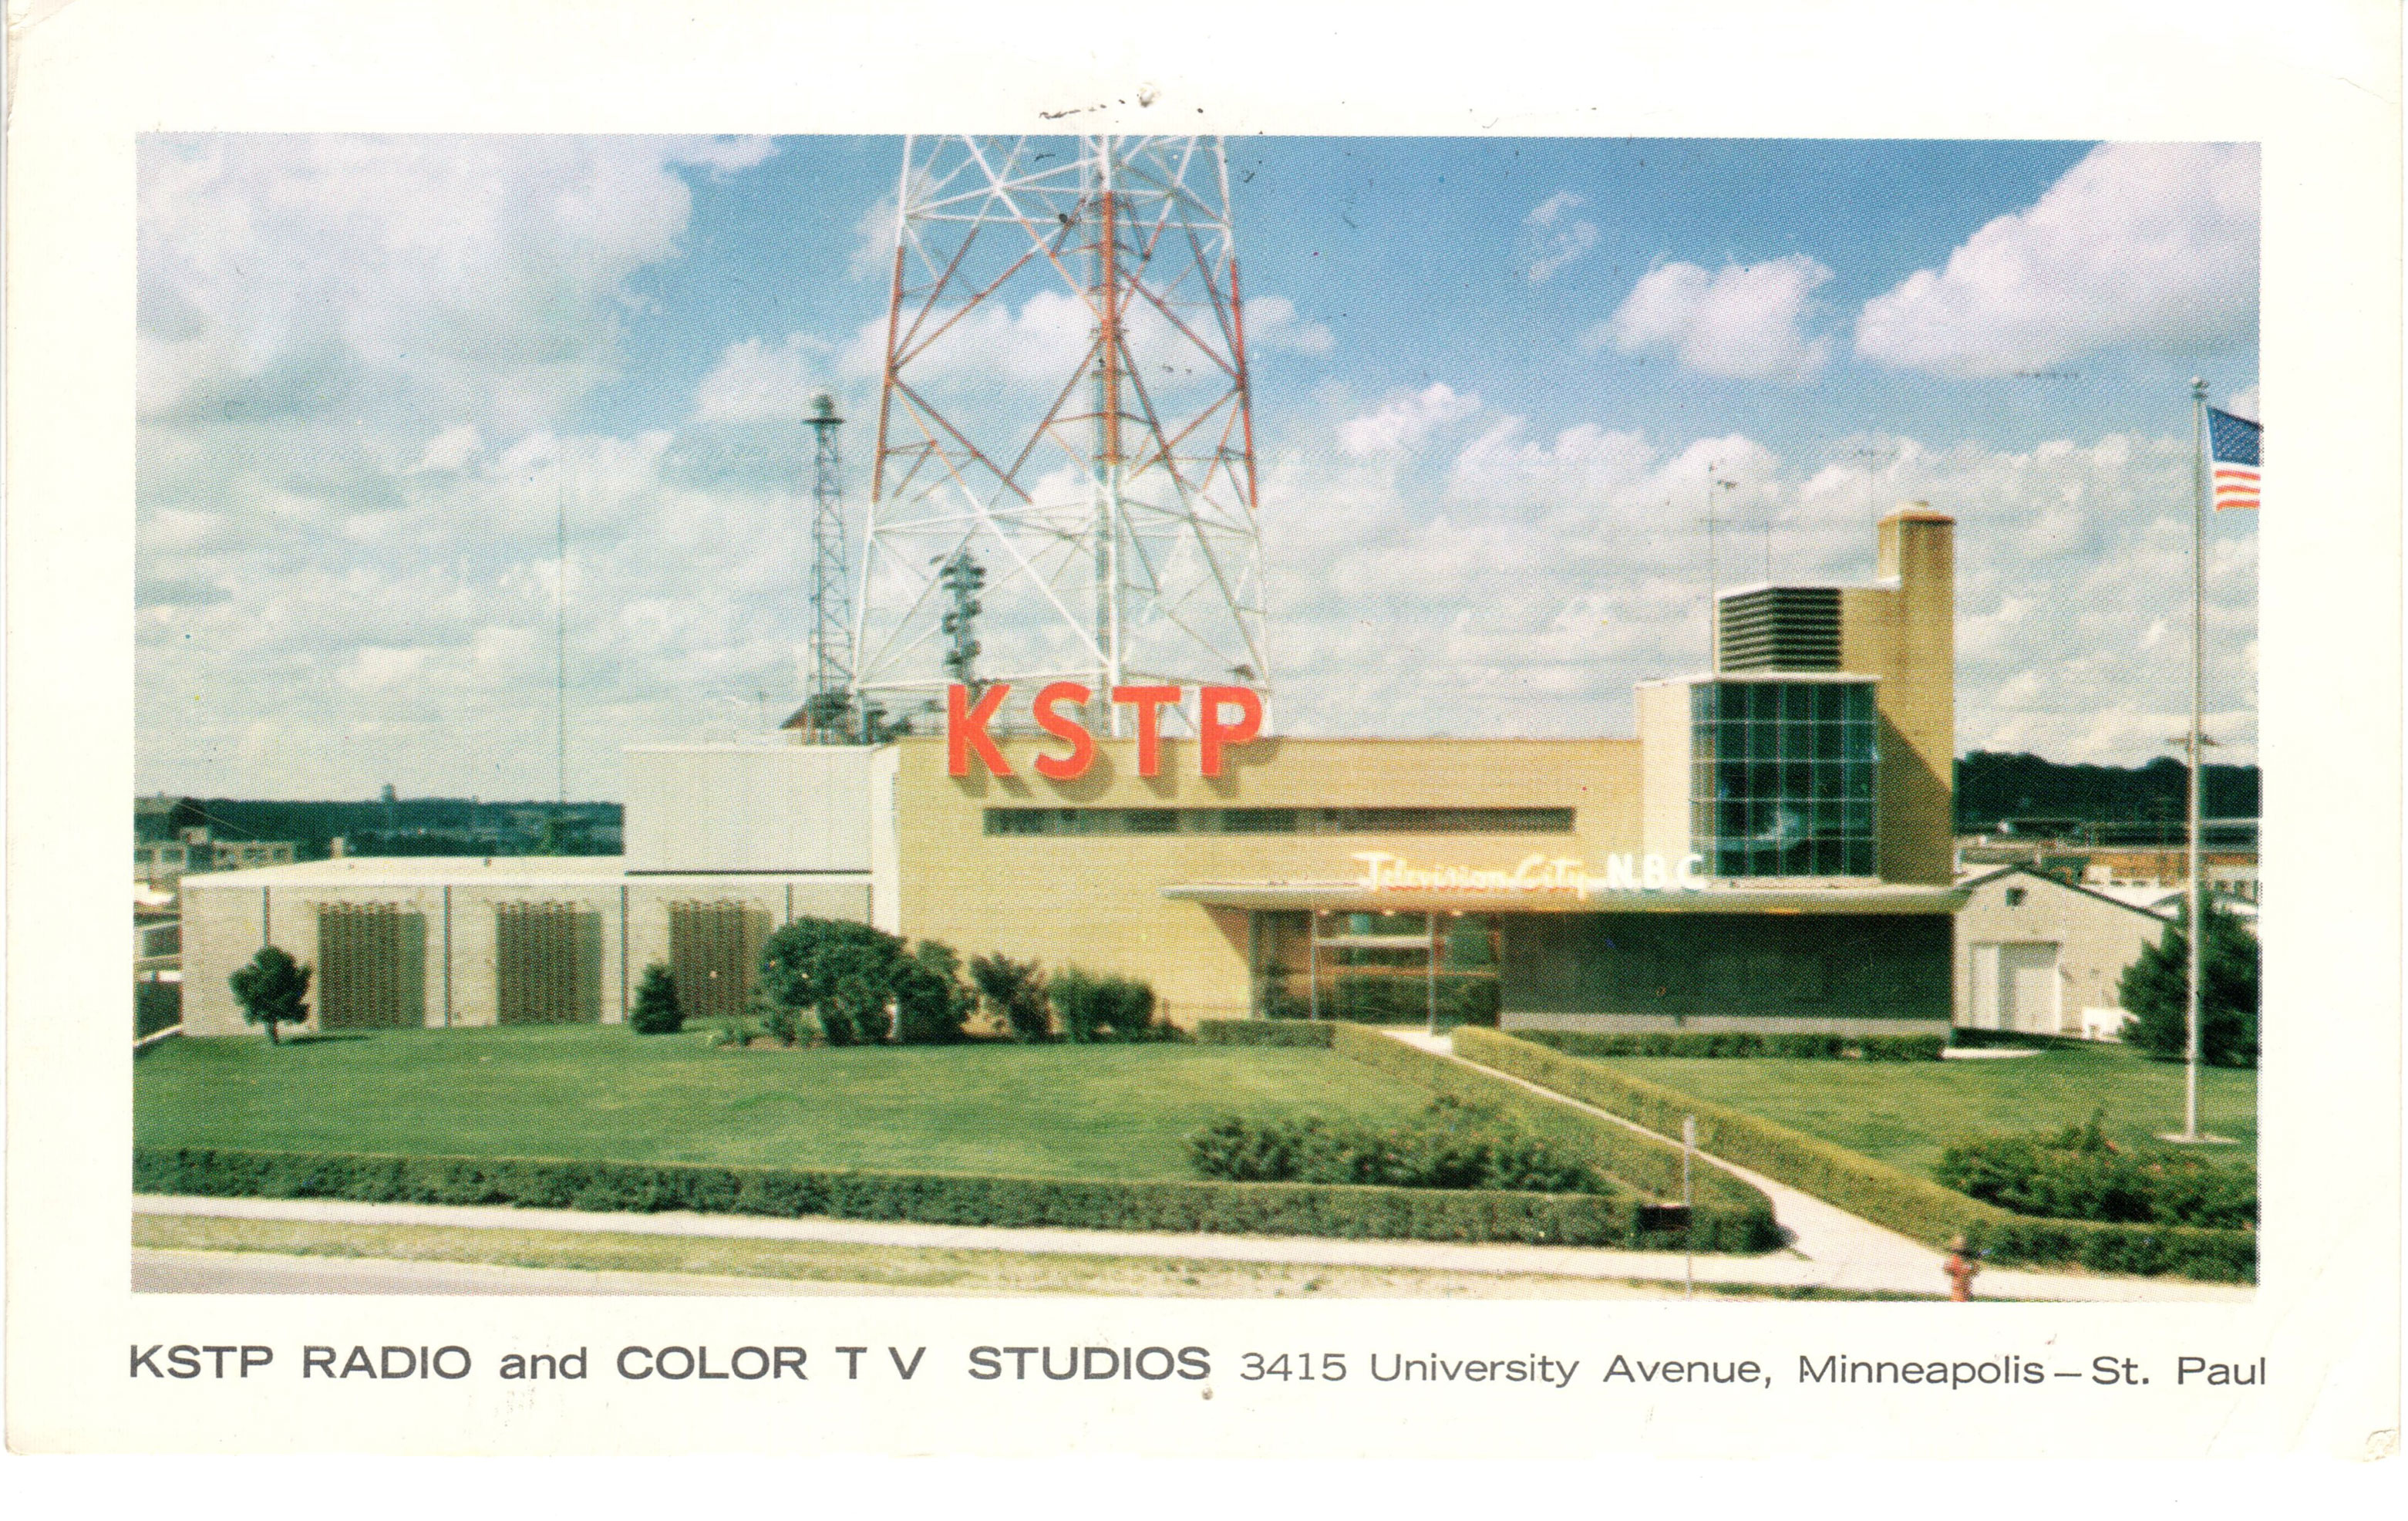 KSTP Radio 1500 Saint Paul, Minnesota